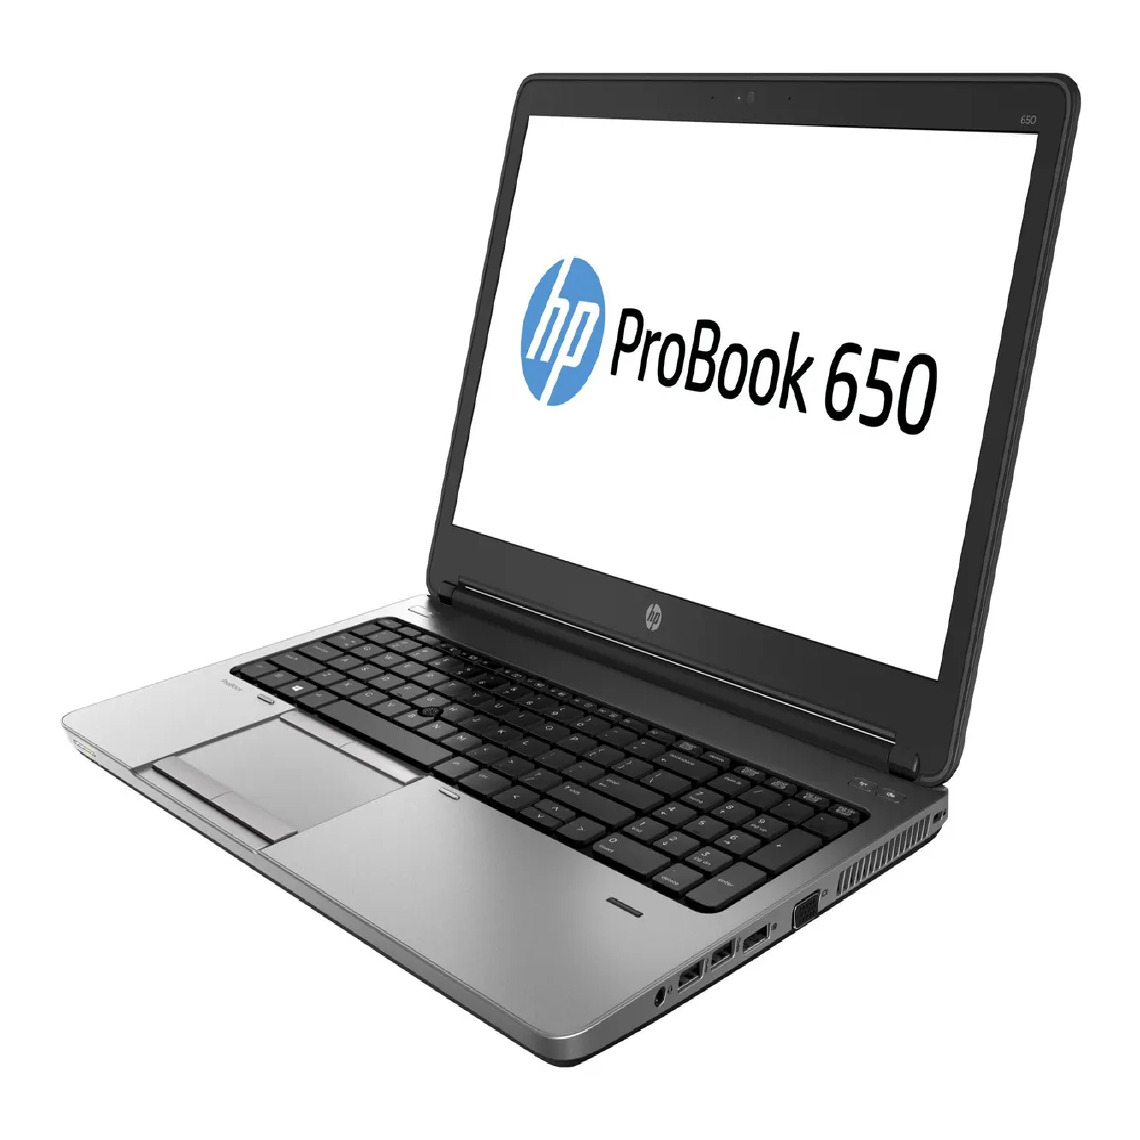 Hp - HP ProBook 650 G1 i5-4200M 8Go 500Go 15.6'' Win 10Pro - PC Portable